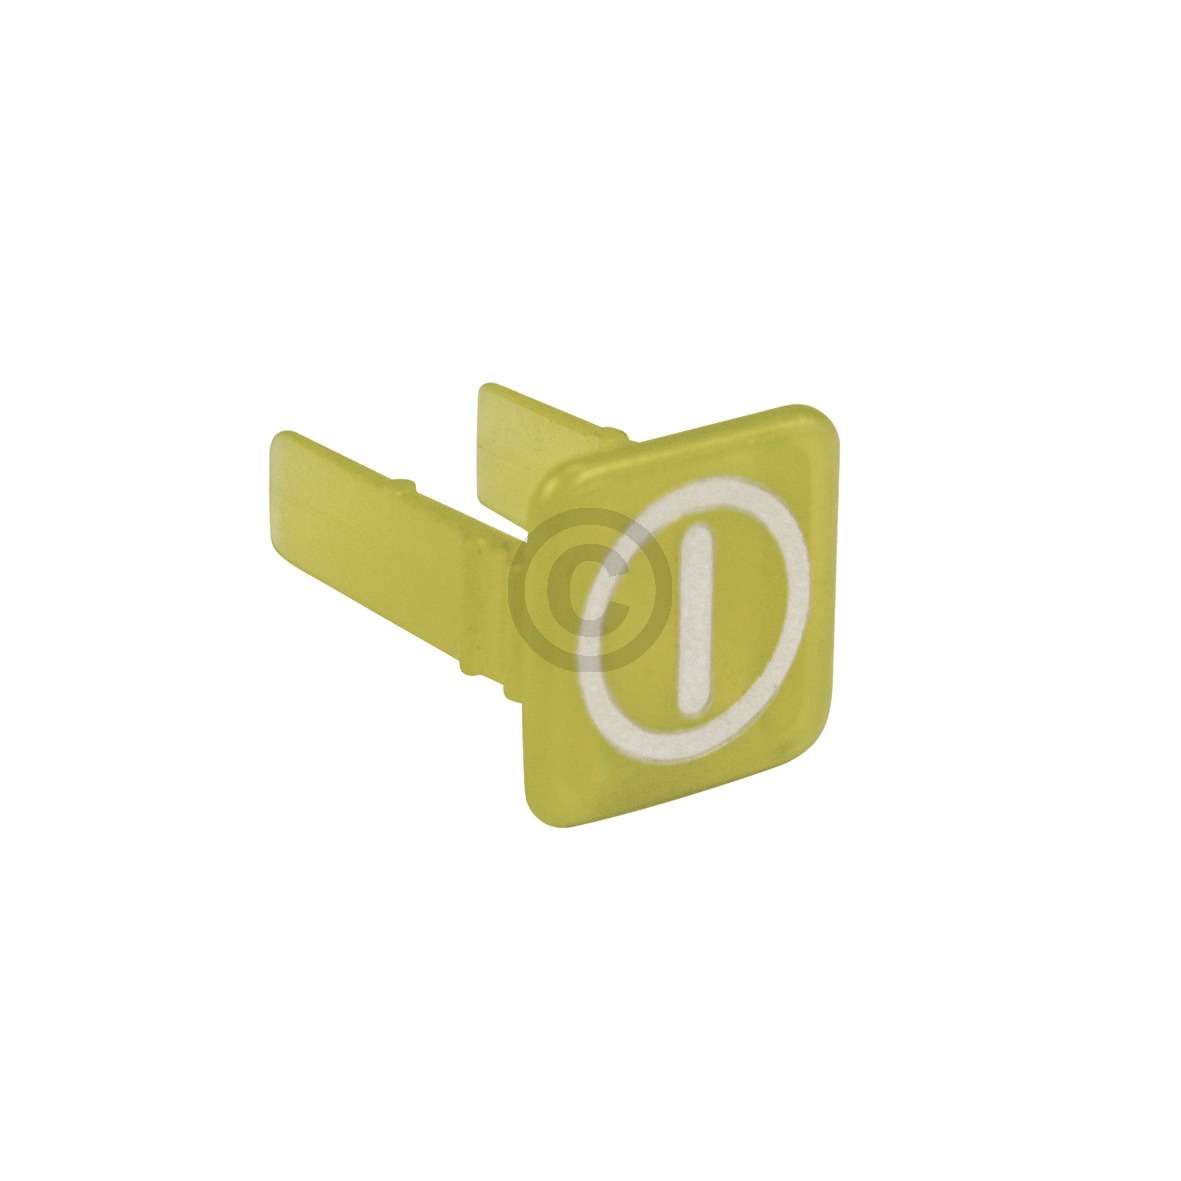 Lampenabdeckung NEFF 00154747 Linse gelb Betriebsanzeigesymbol für Kontrolllampe Backofen Herd